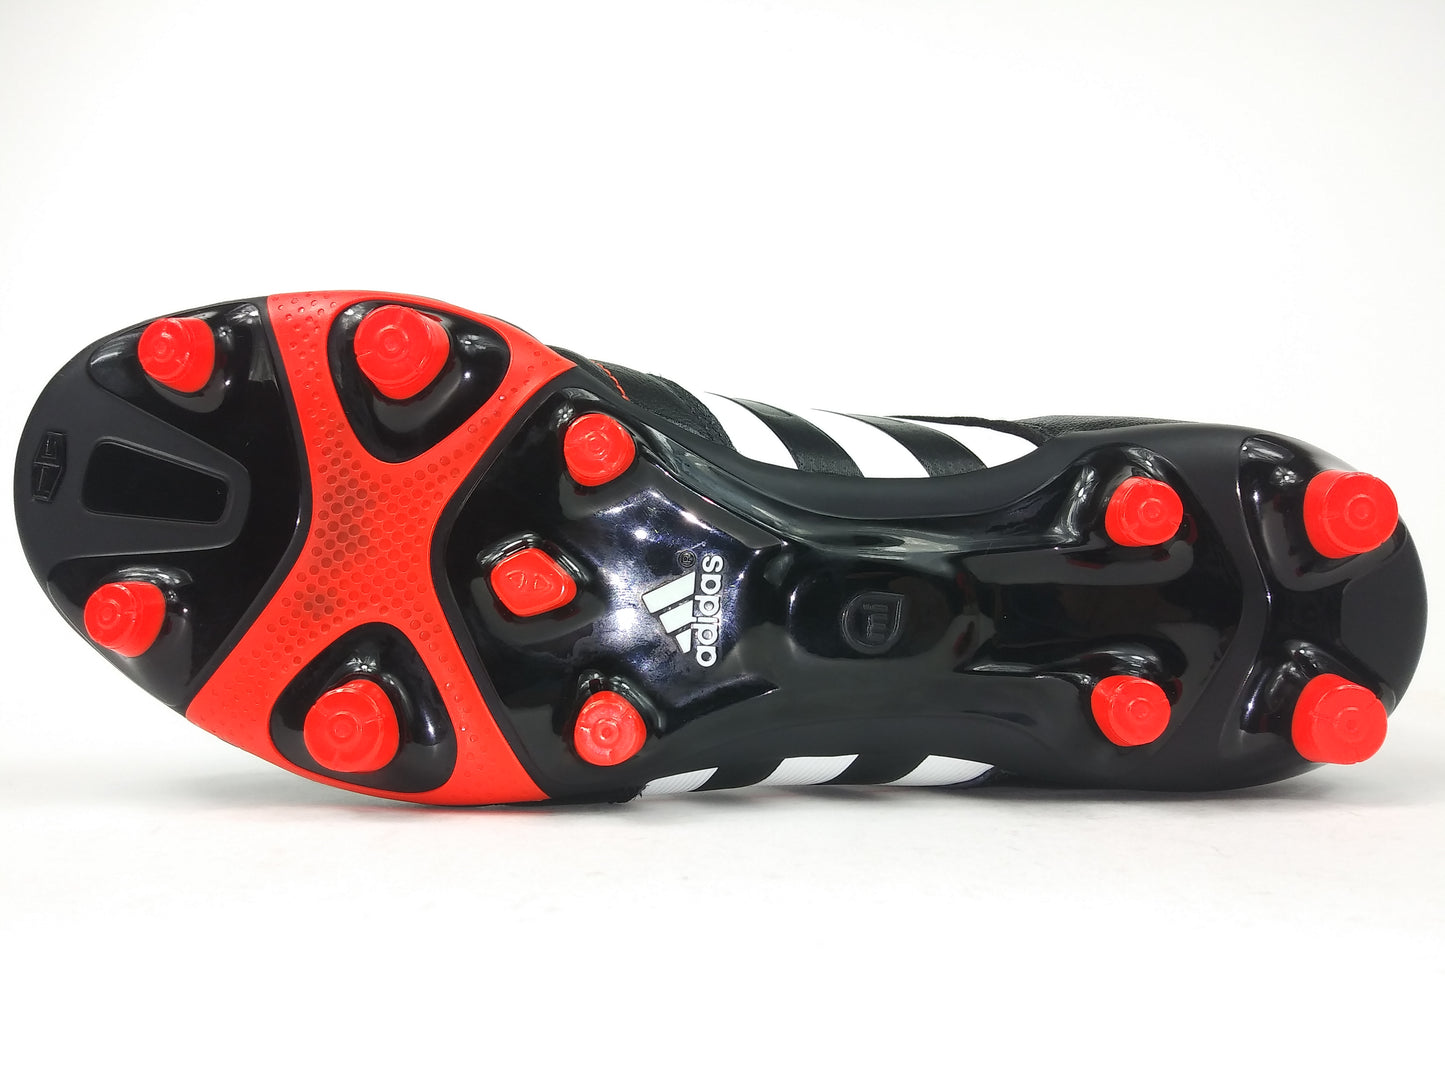 Adidas 11Core TRX FG Black Red